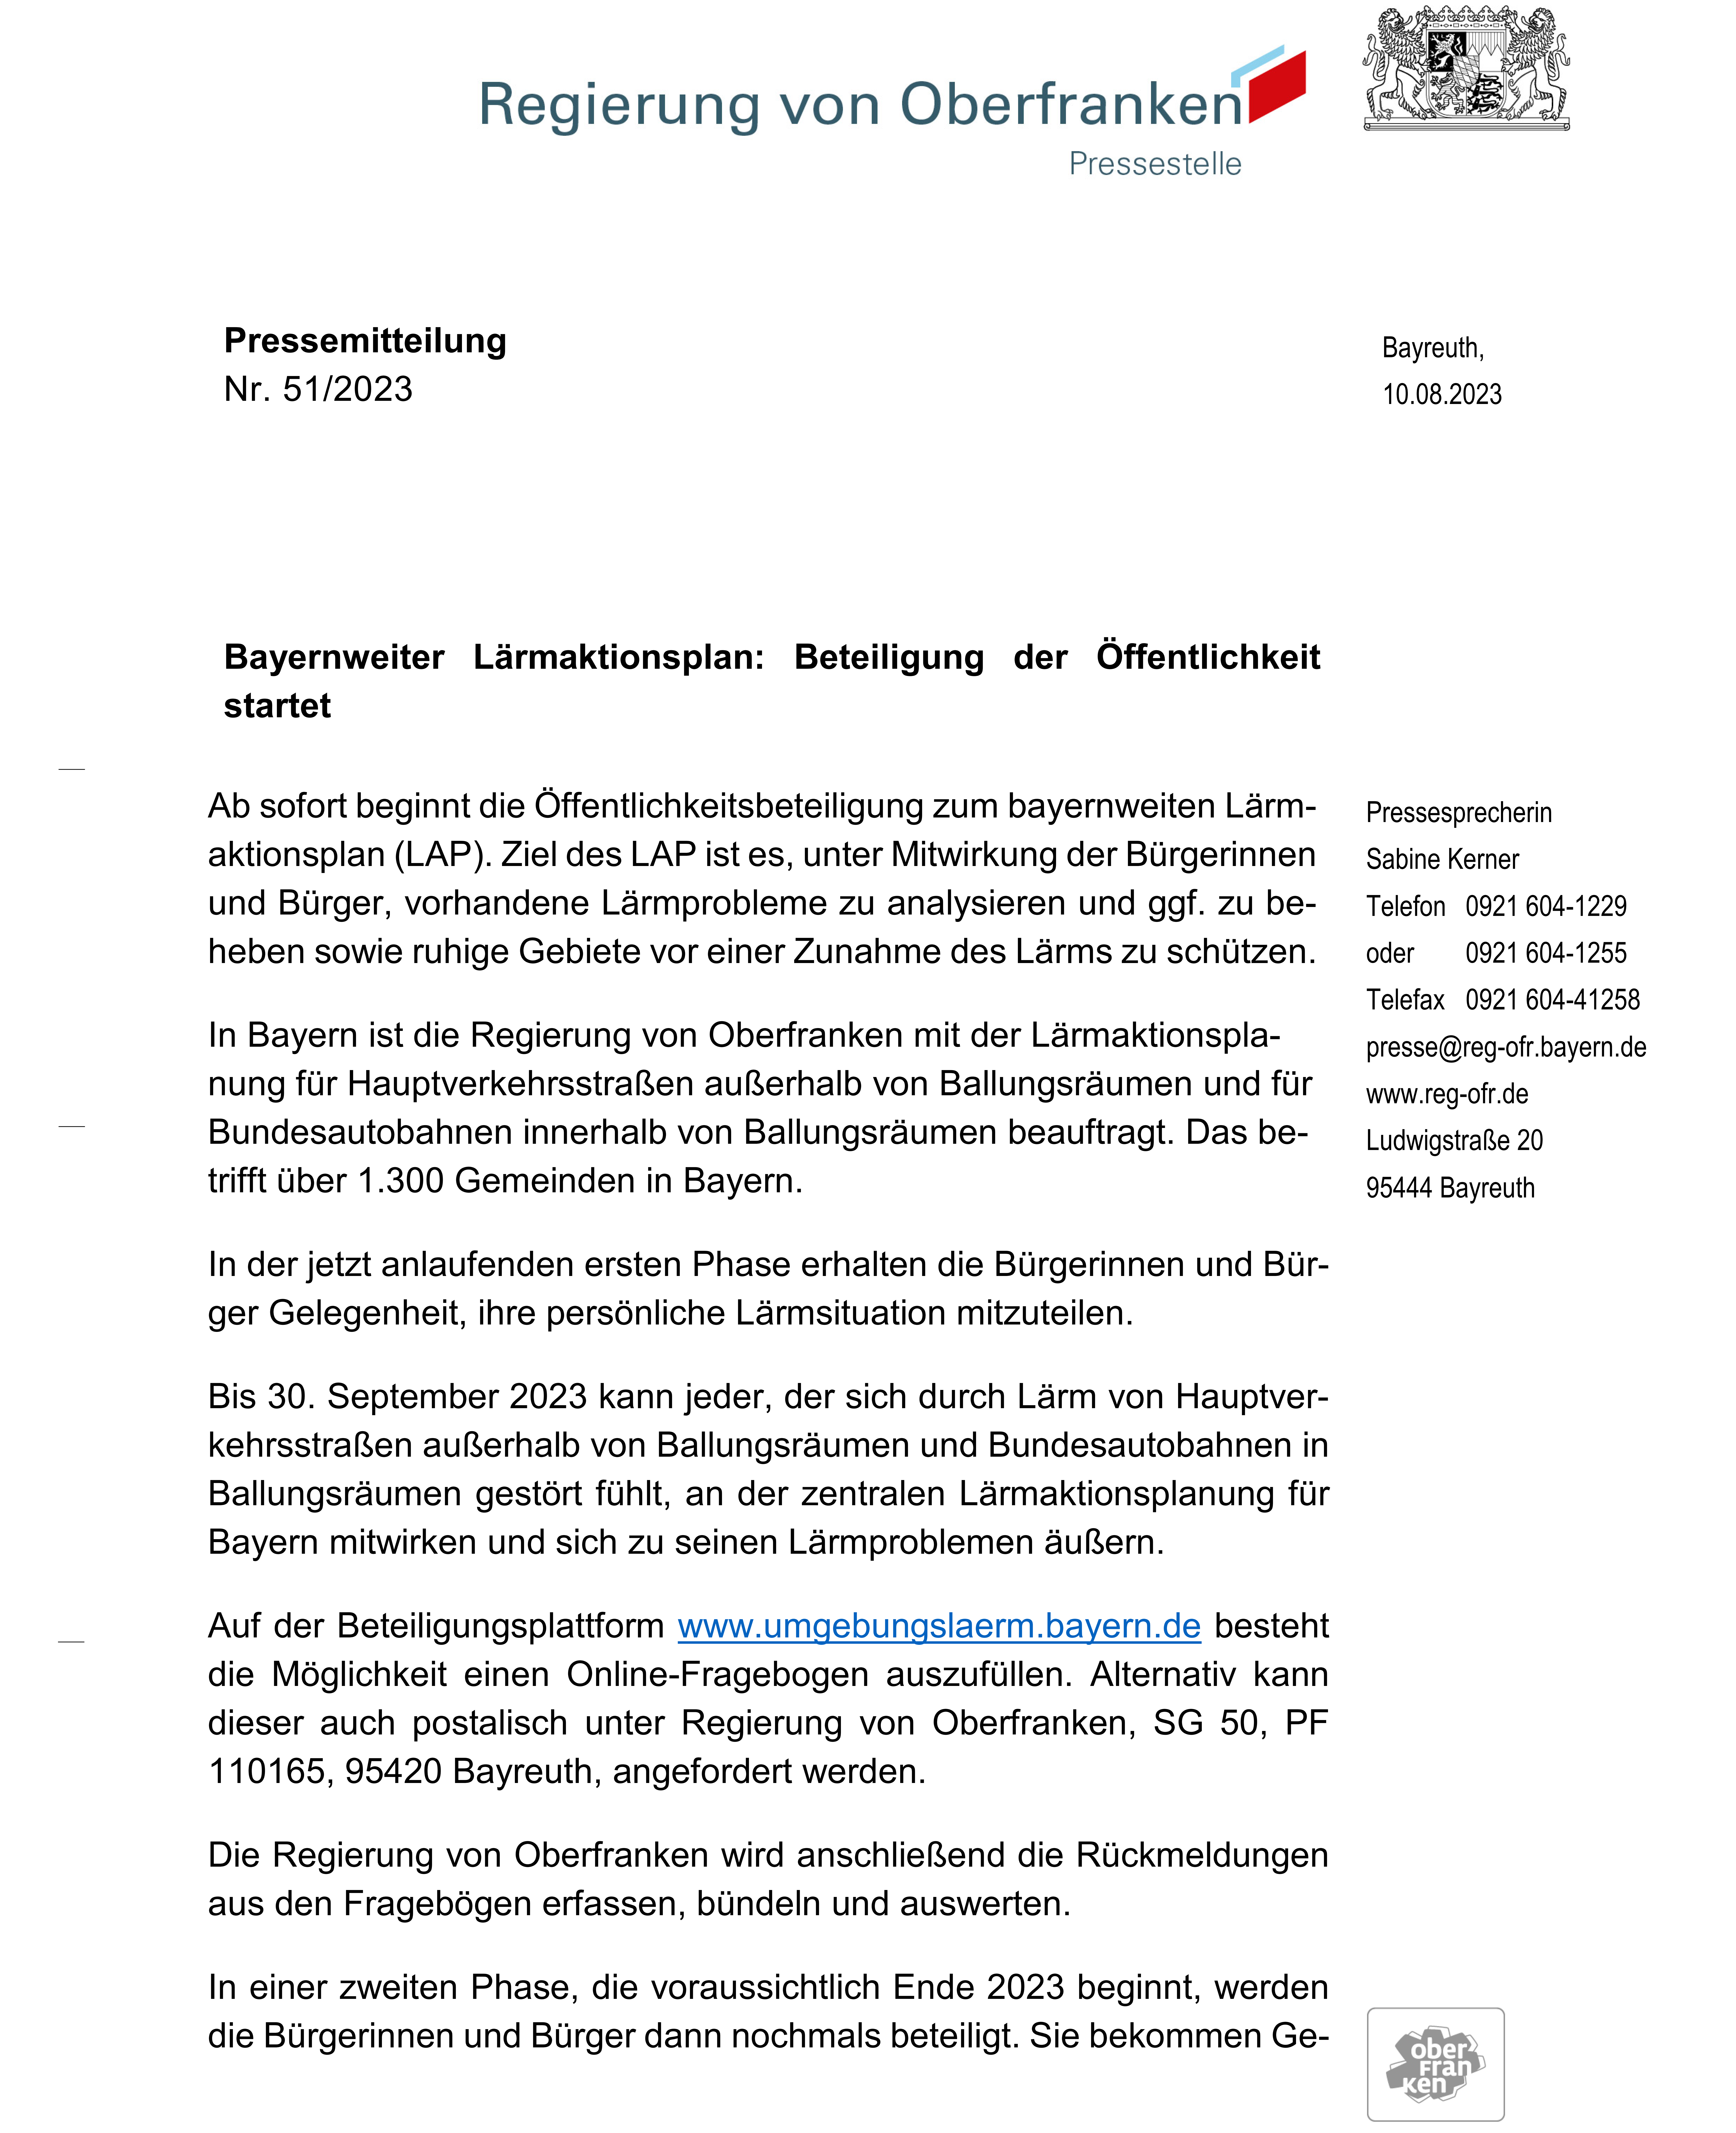 Bayernweiter Lärmaktionsplan: Beteiligung der Öffentlichkeit startet - Pressemitteilung der Regierung von Oberfranken, Seite 1